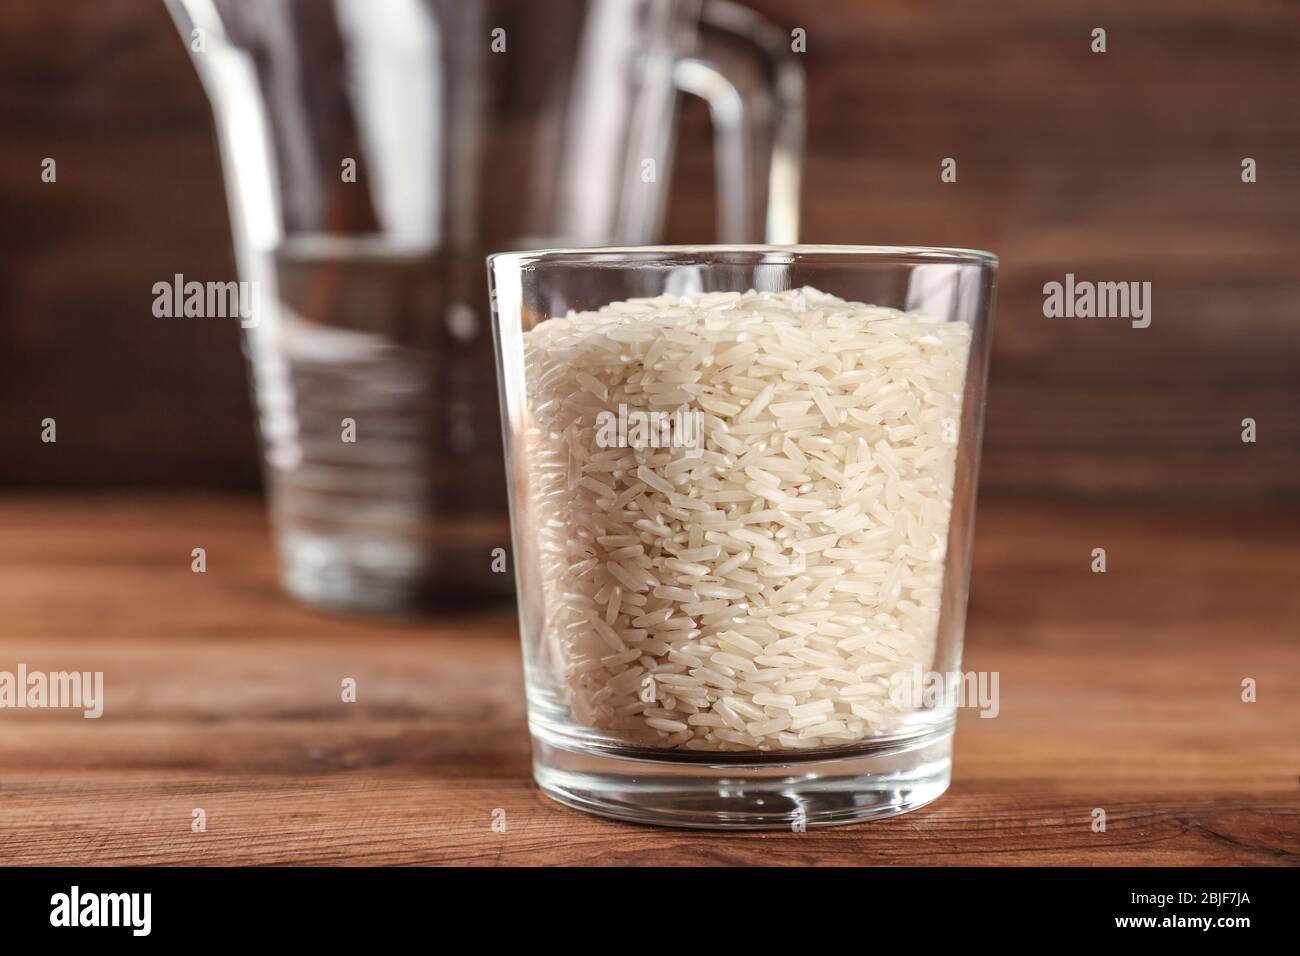 Сколько риса в стакане 200. Стакан риса. Рис в стакане 200. Стакан риса в граммах. 1 5 Стакана риса.